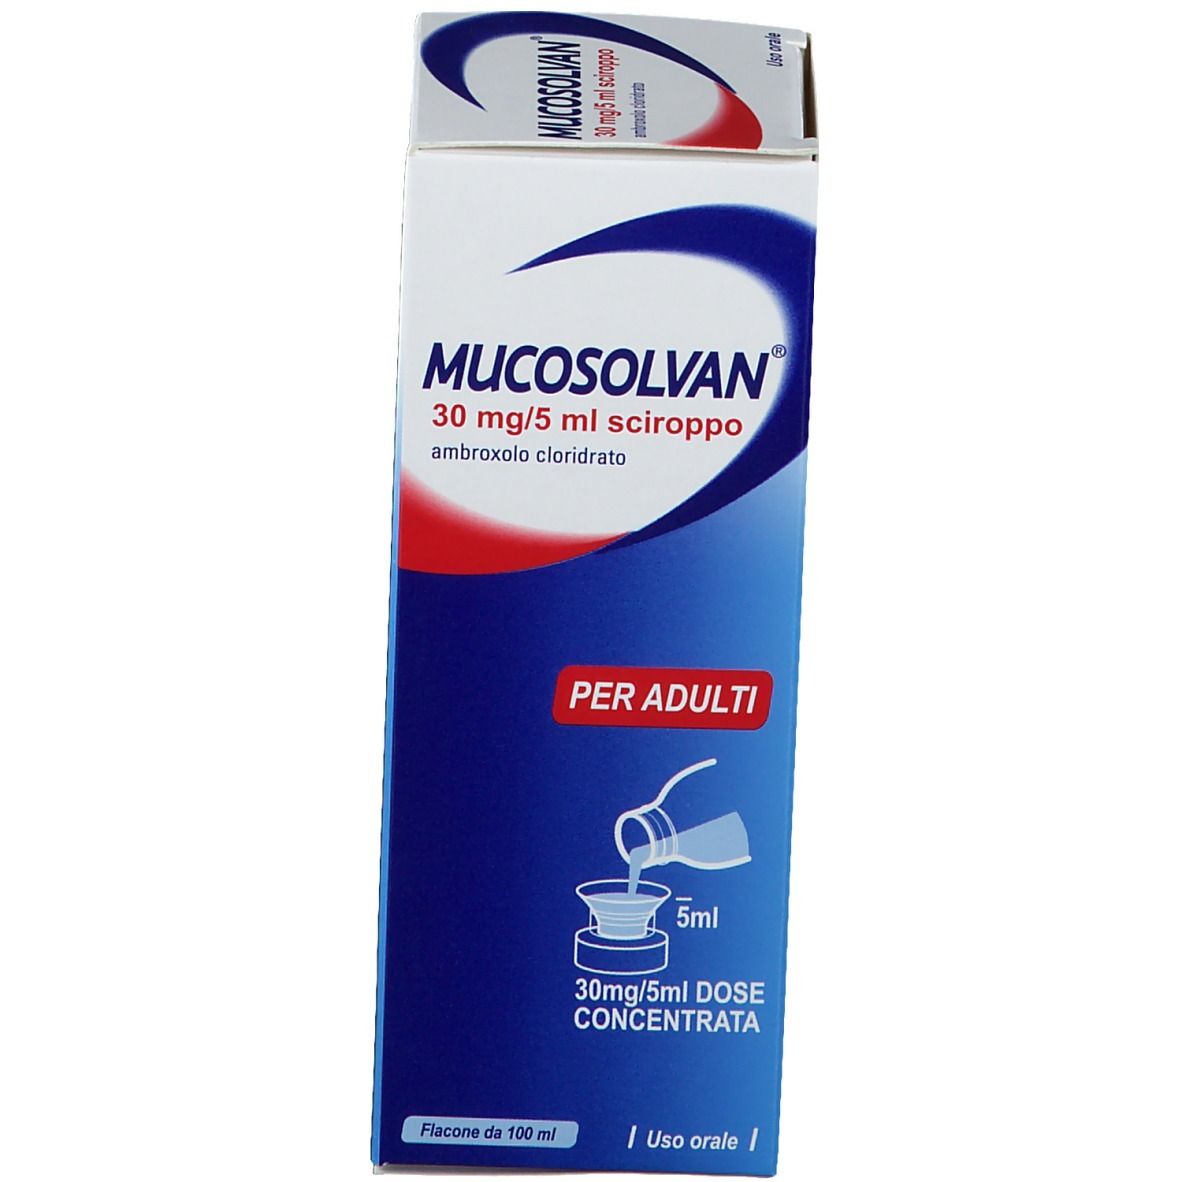 MUCOSOLVAN 30 mg/5 ml Sciroppo